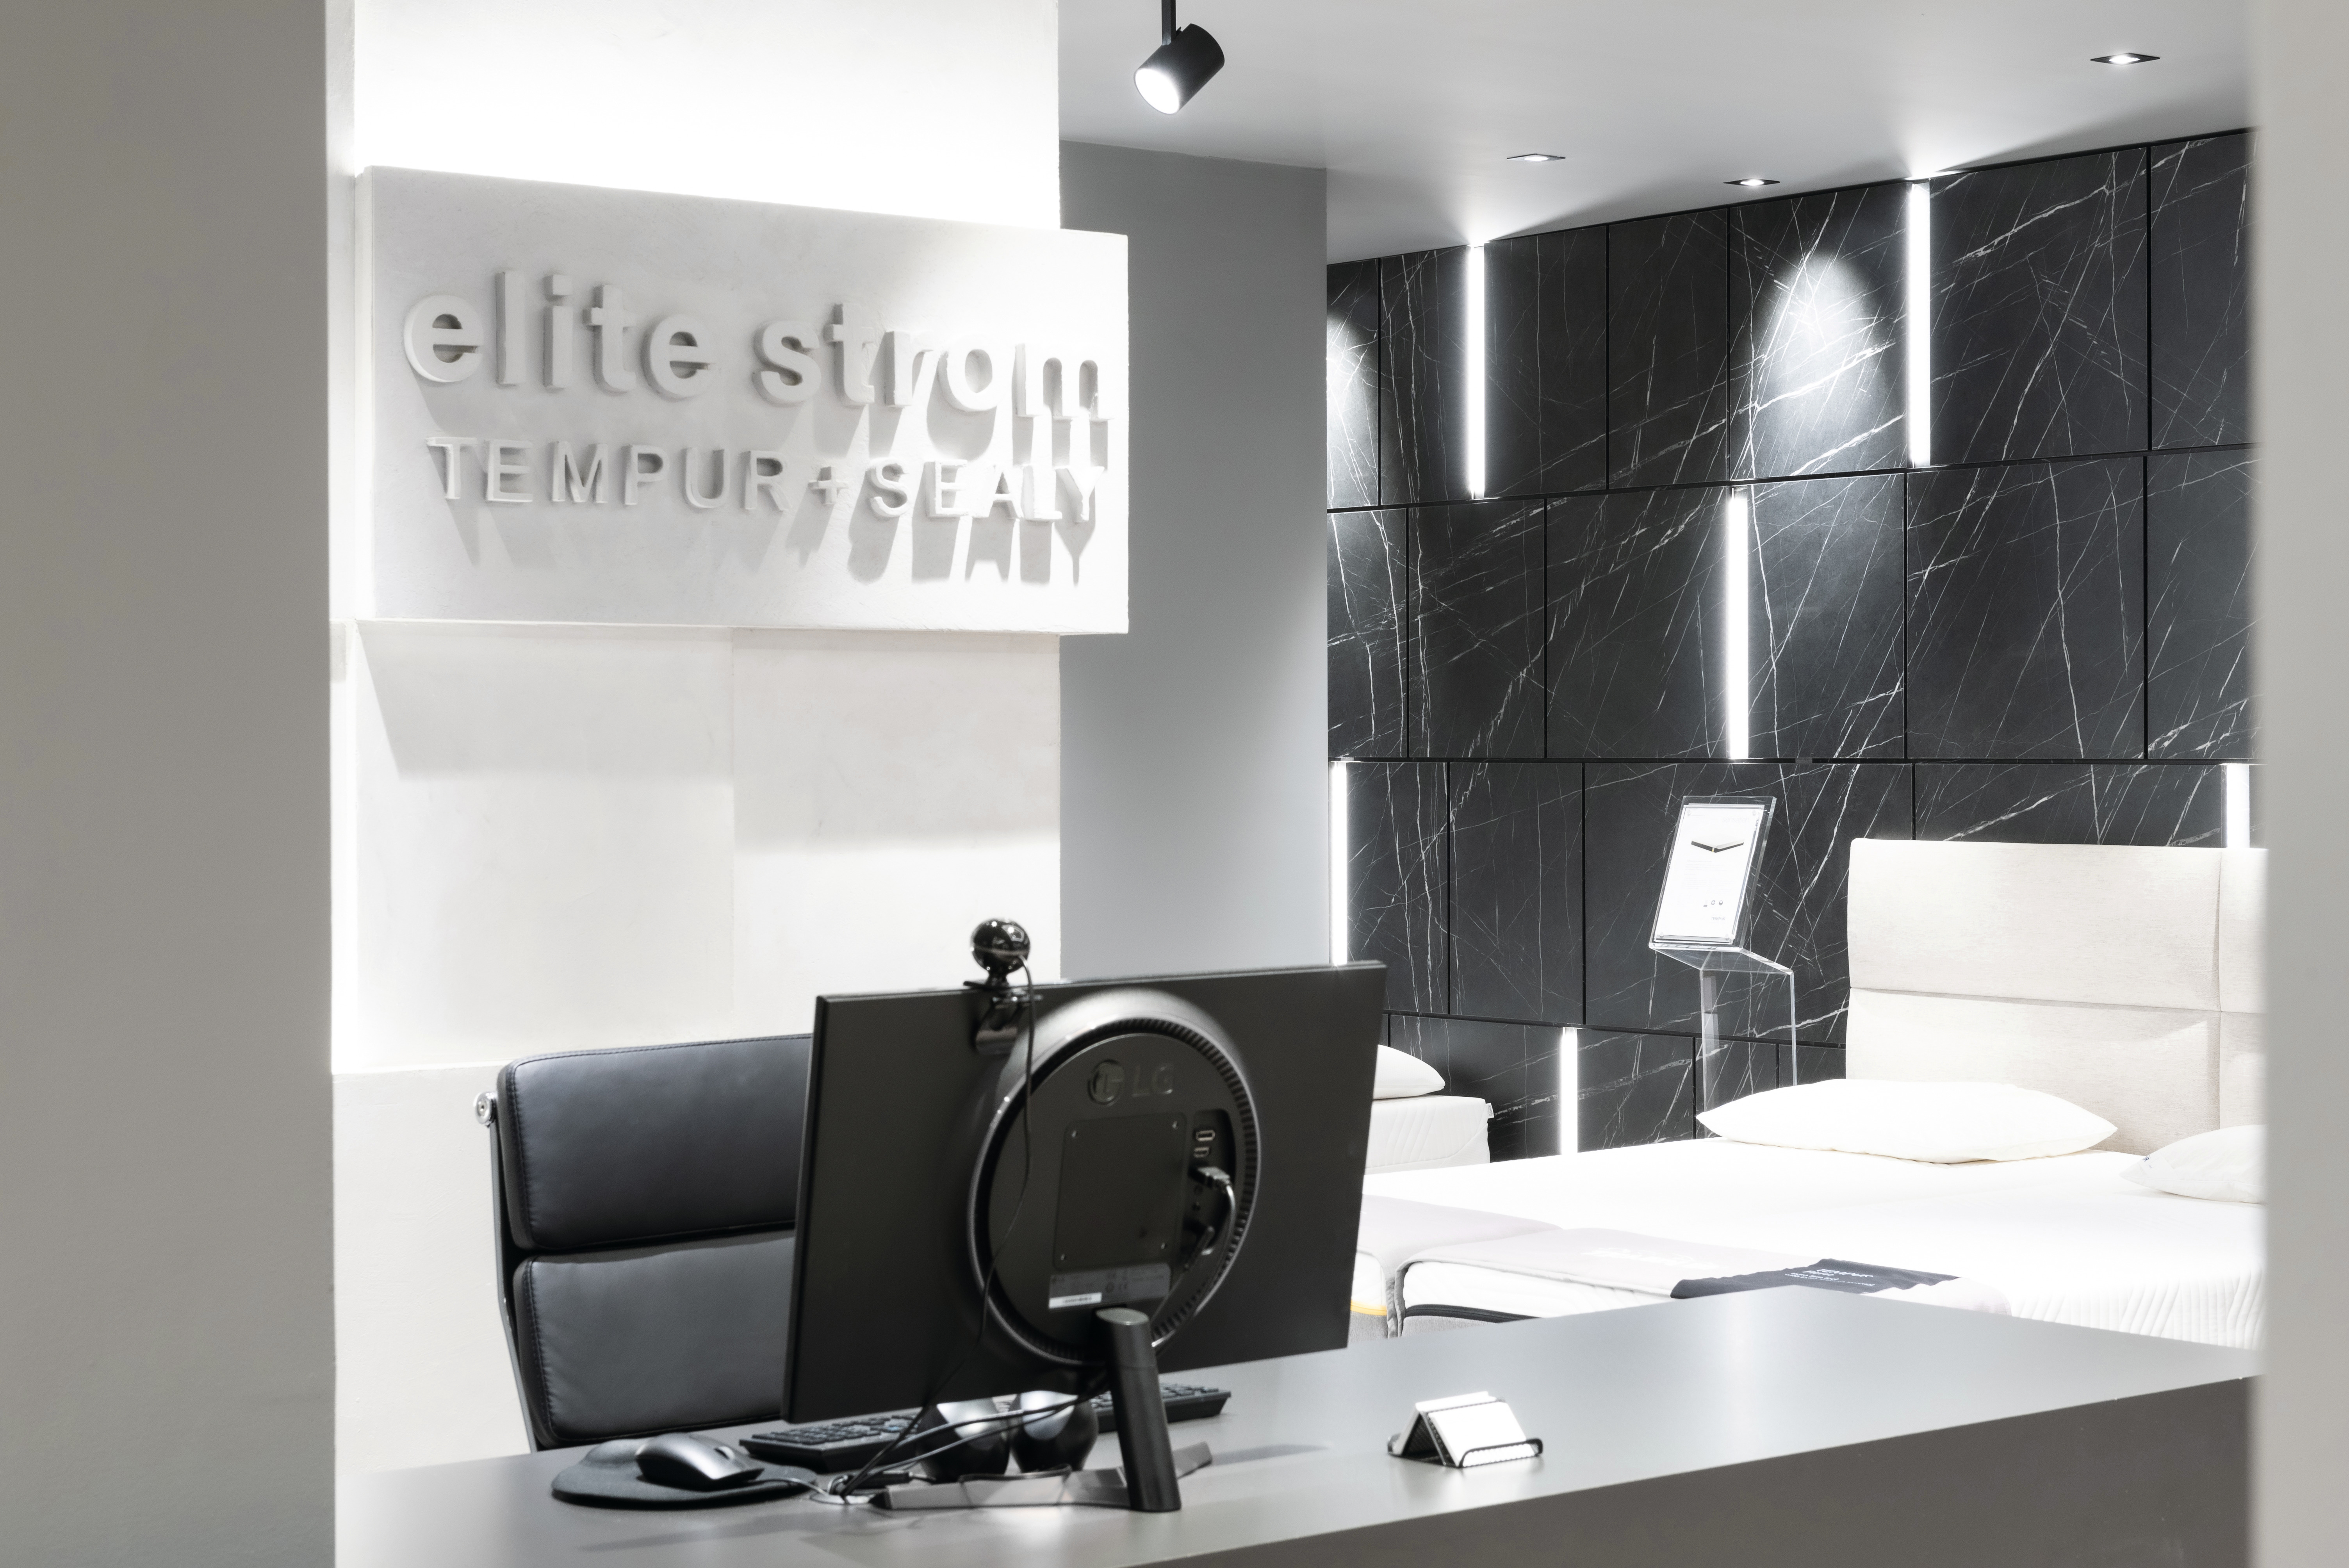 Noul design al showroom-ului impresionează prin numeroase detalii bine gândite.